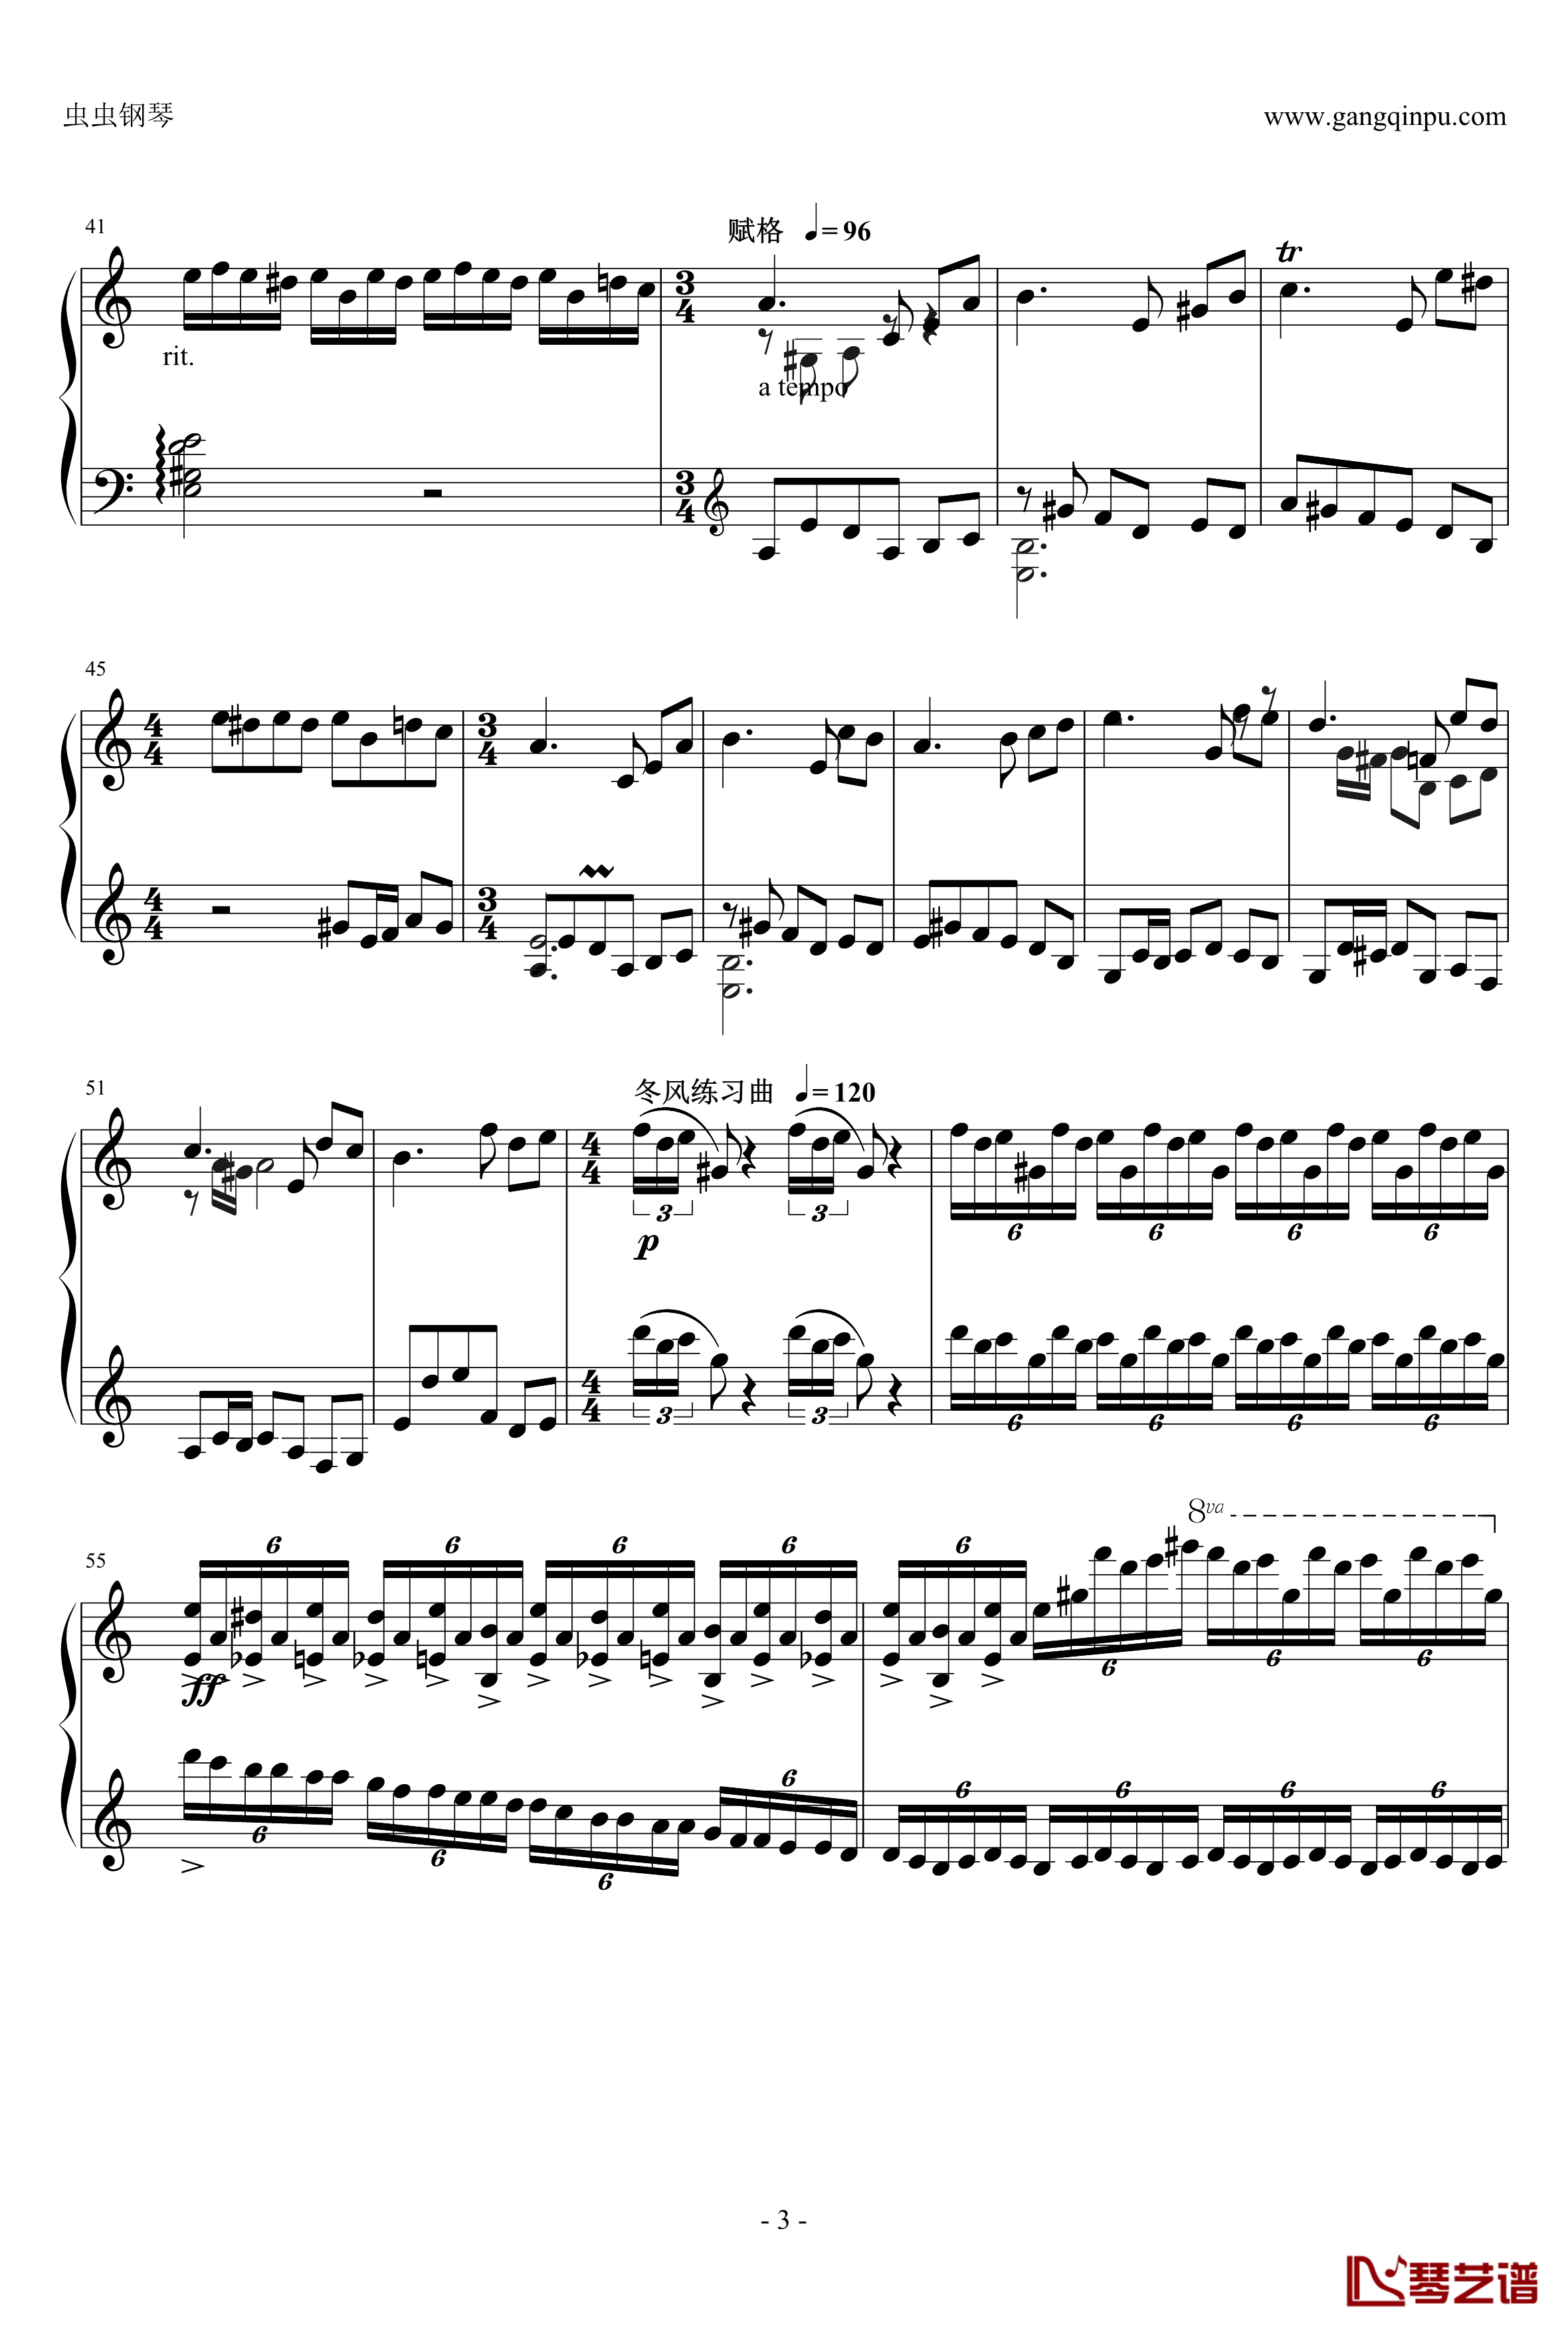 爱丽丝主题狂想曲钢琴谱-绝对的听觉冲击-贝多芬-beethoven3